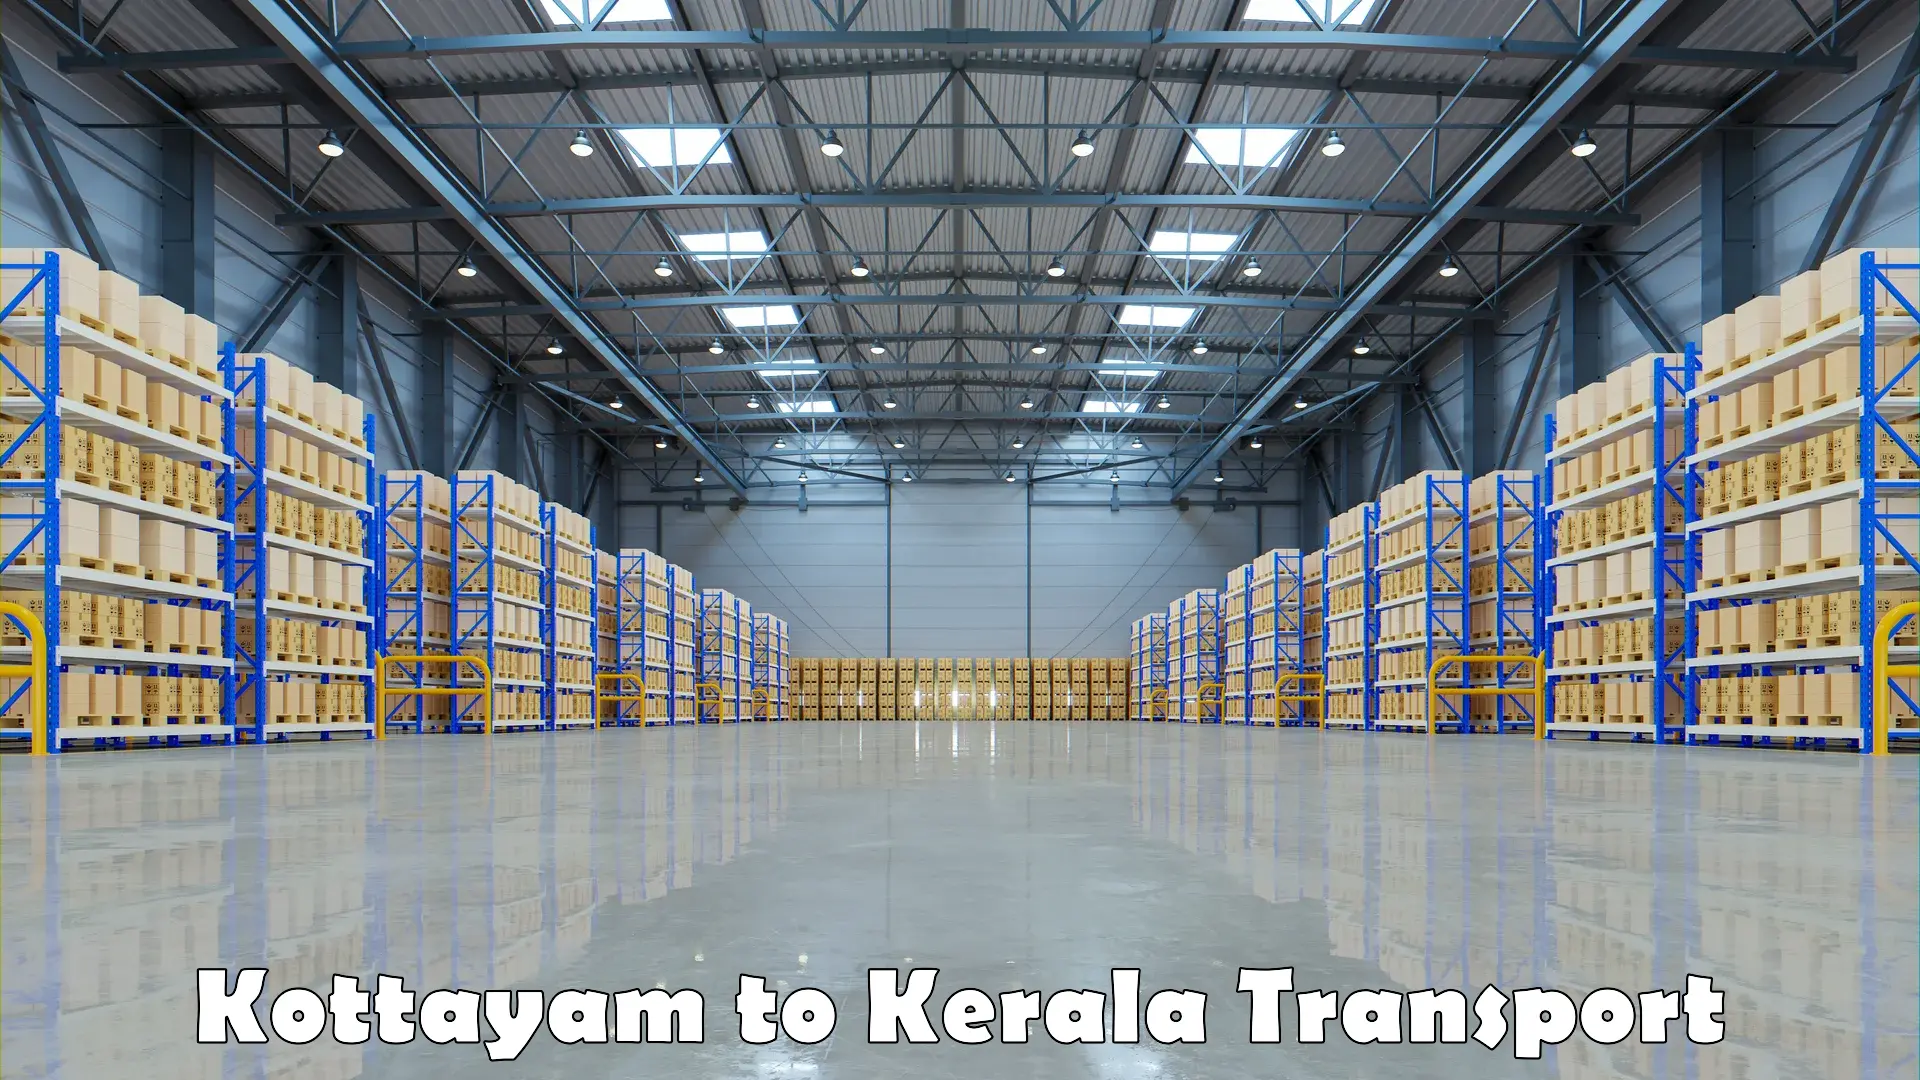 Lorry transport service Kottayam to Kalanjoor